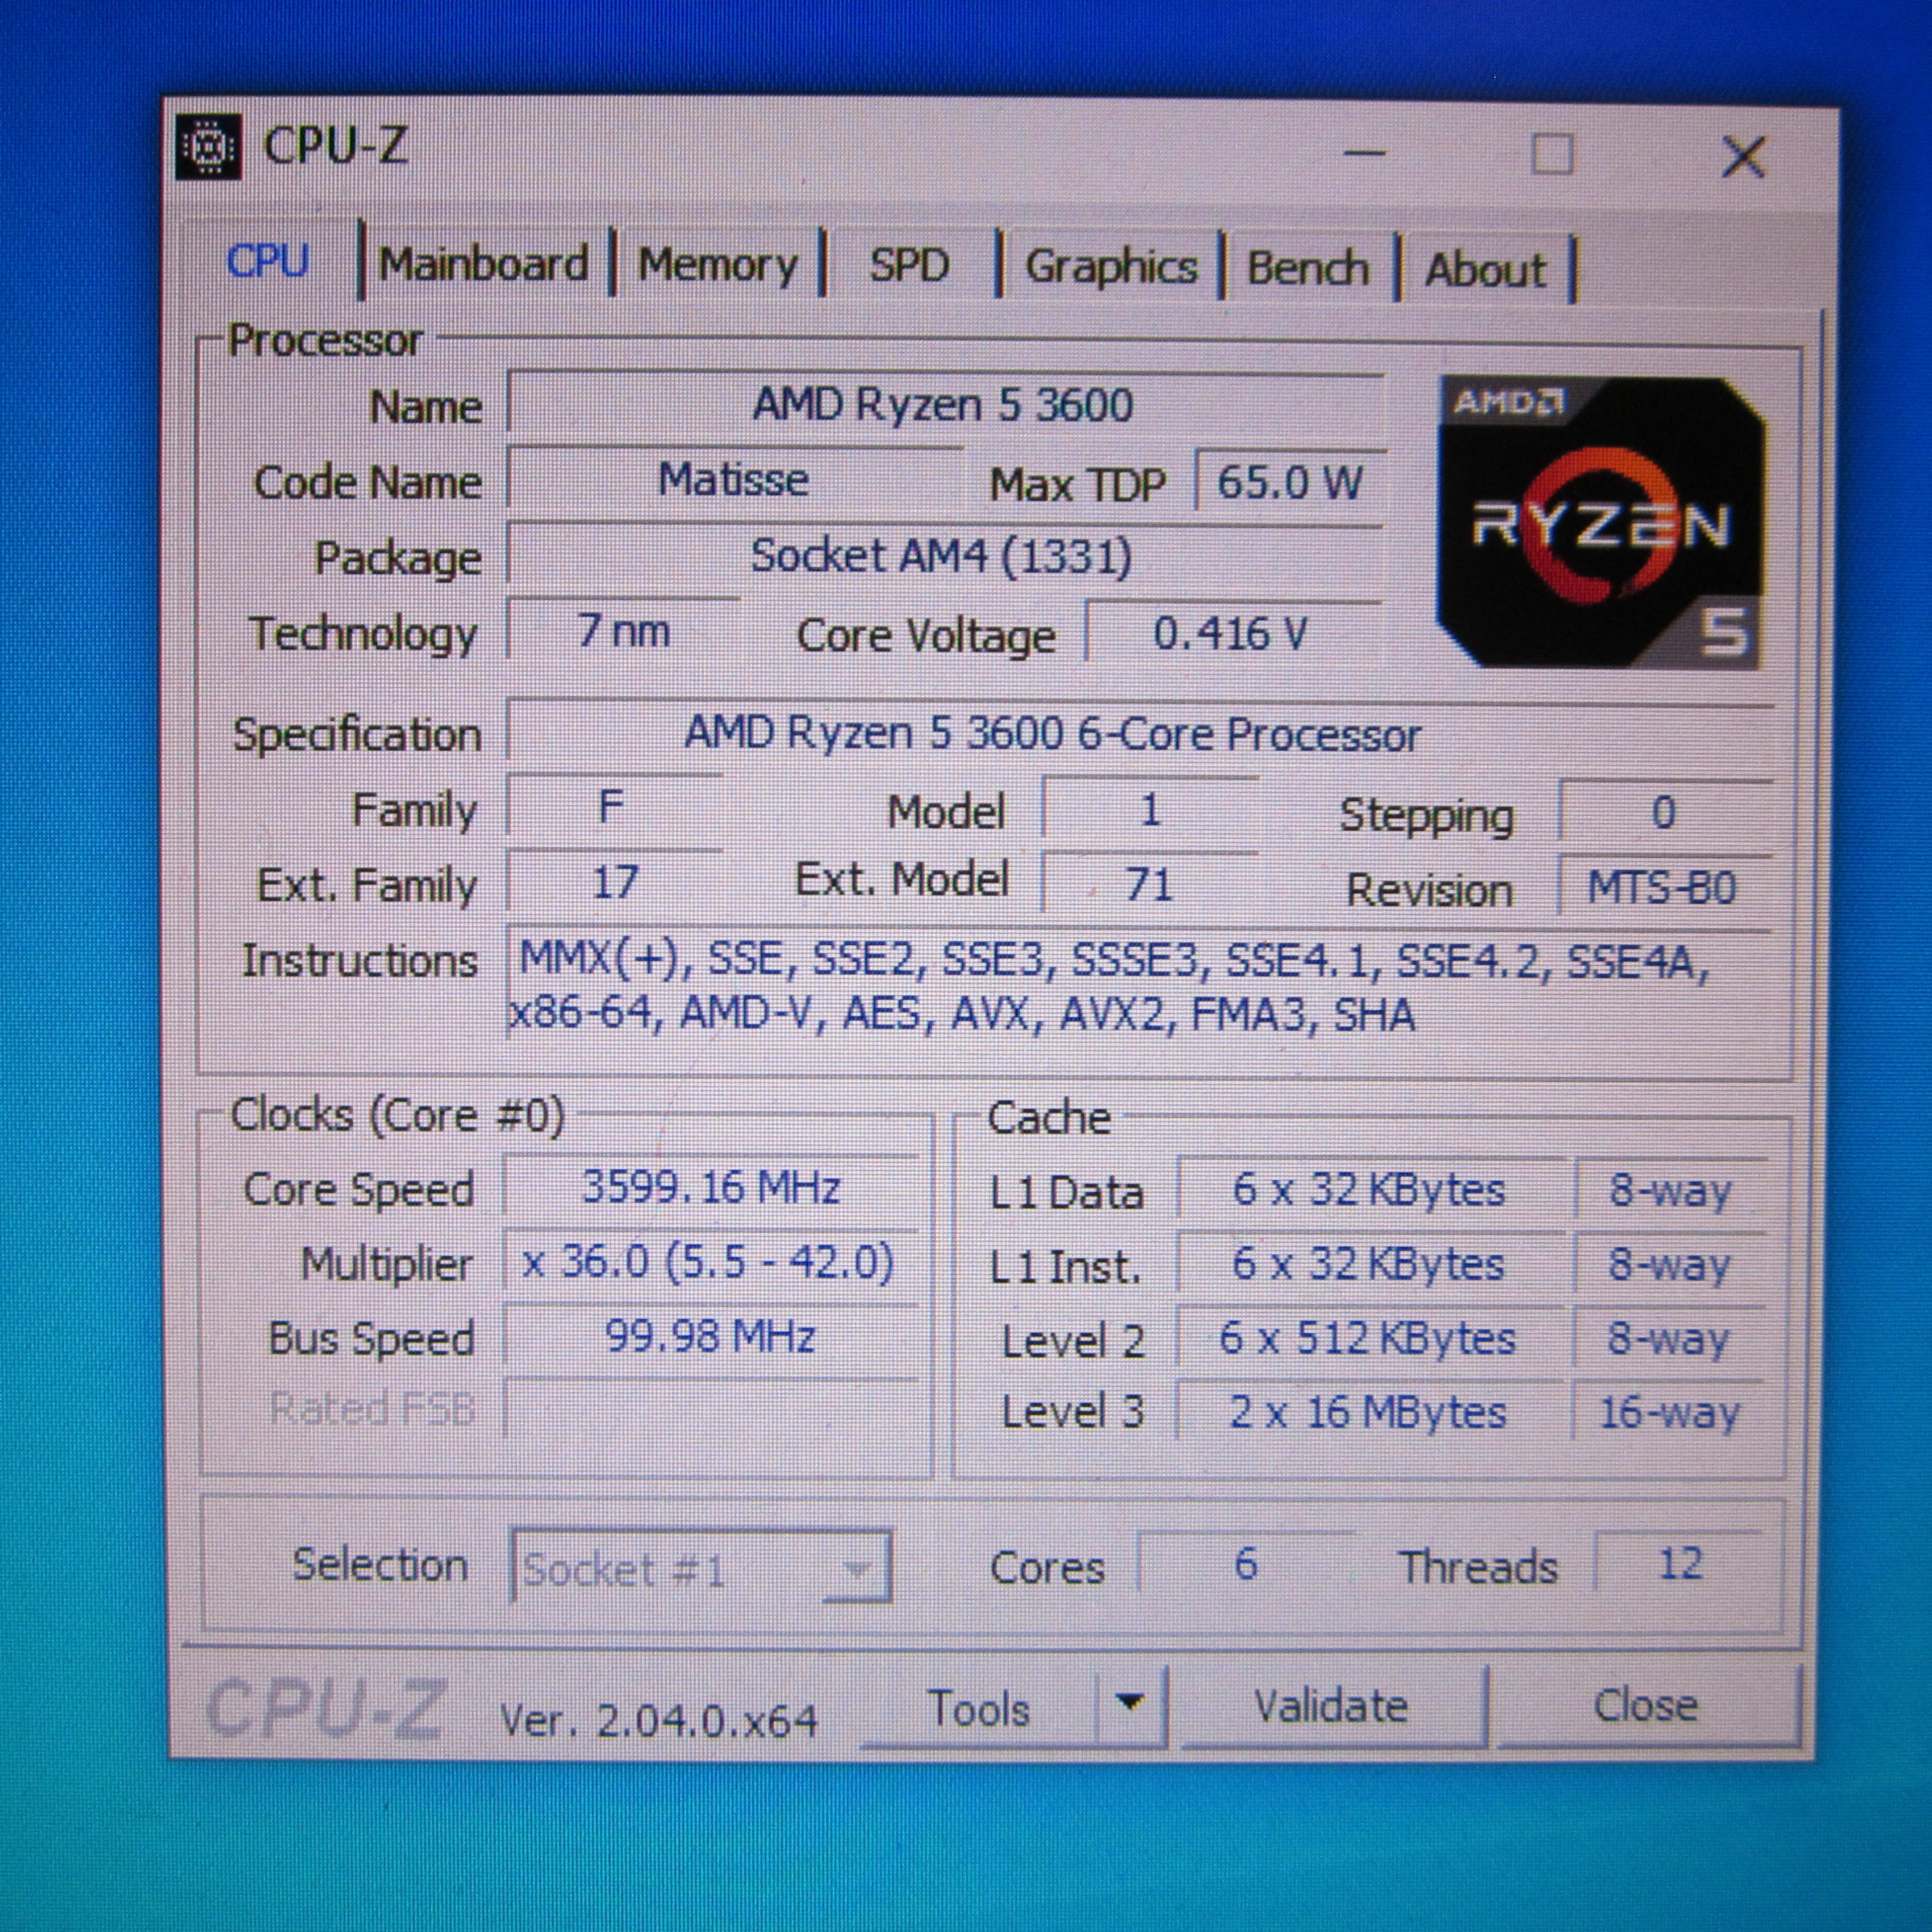 AMD Ryzen 5 3600 3.6GHz AM4 CPU with Cooler